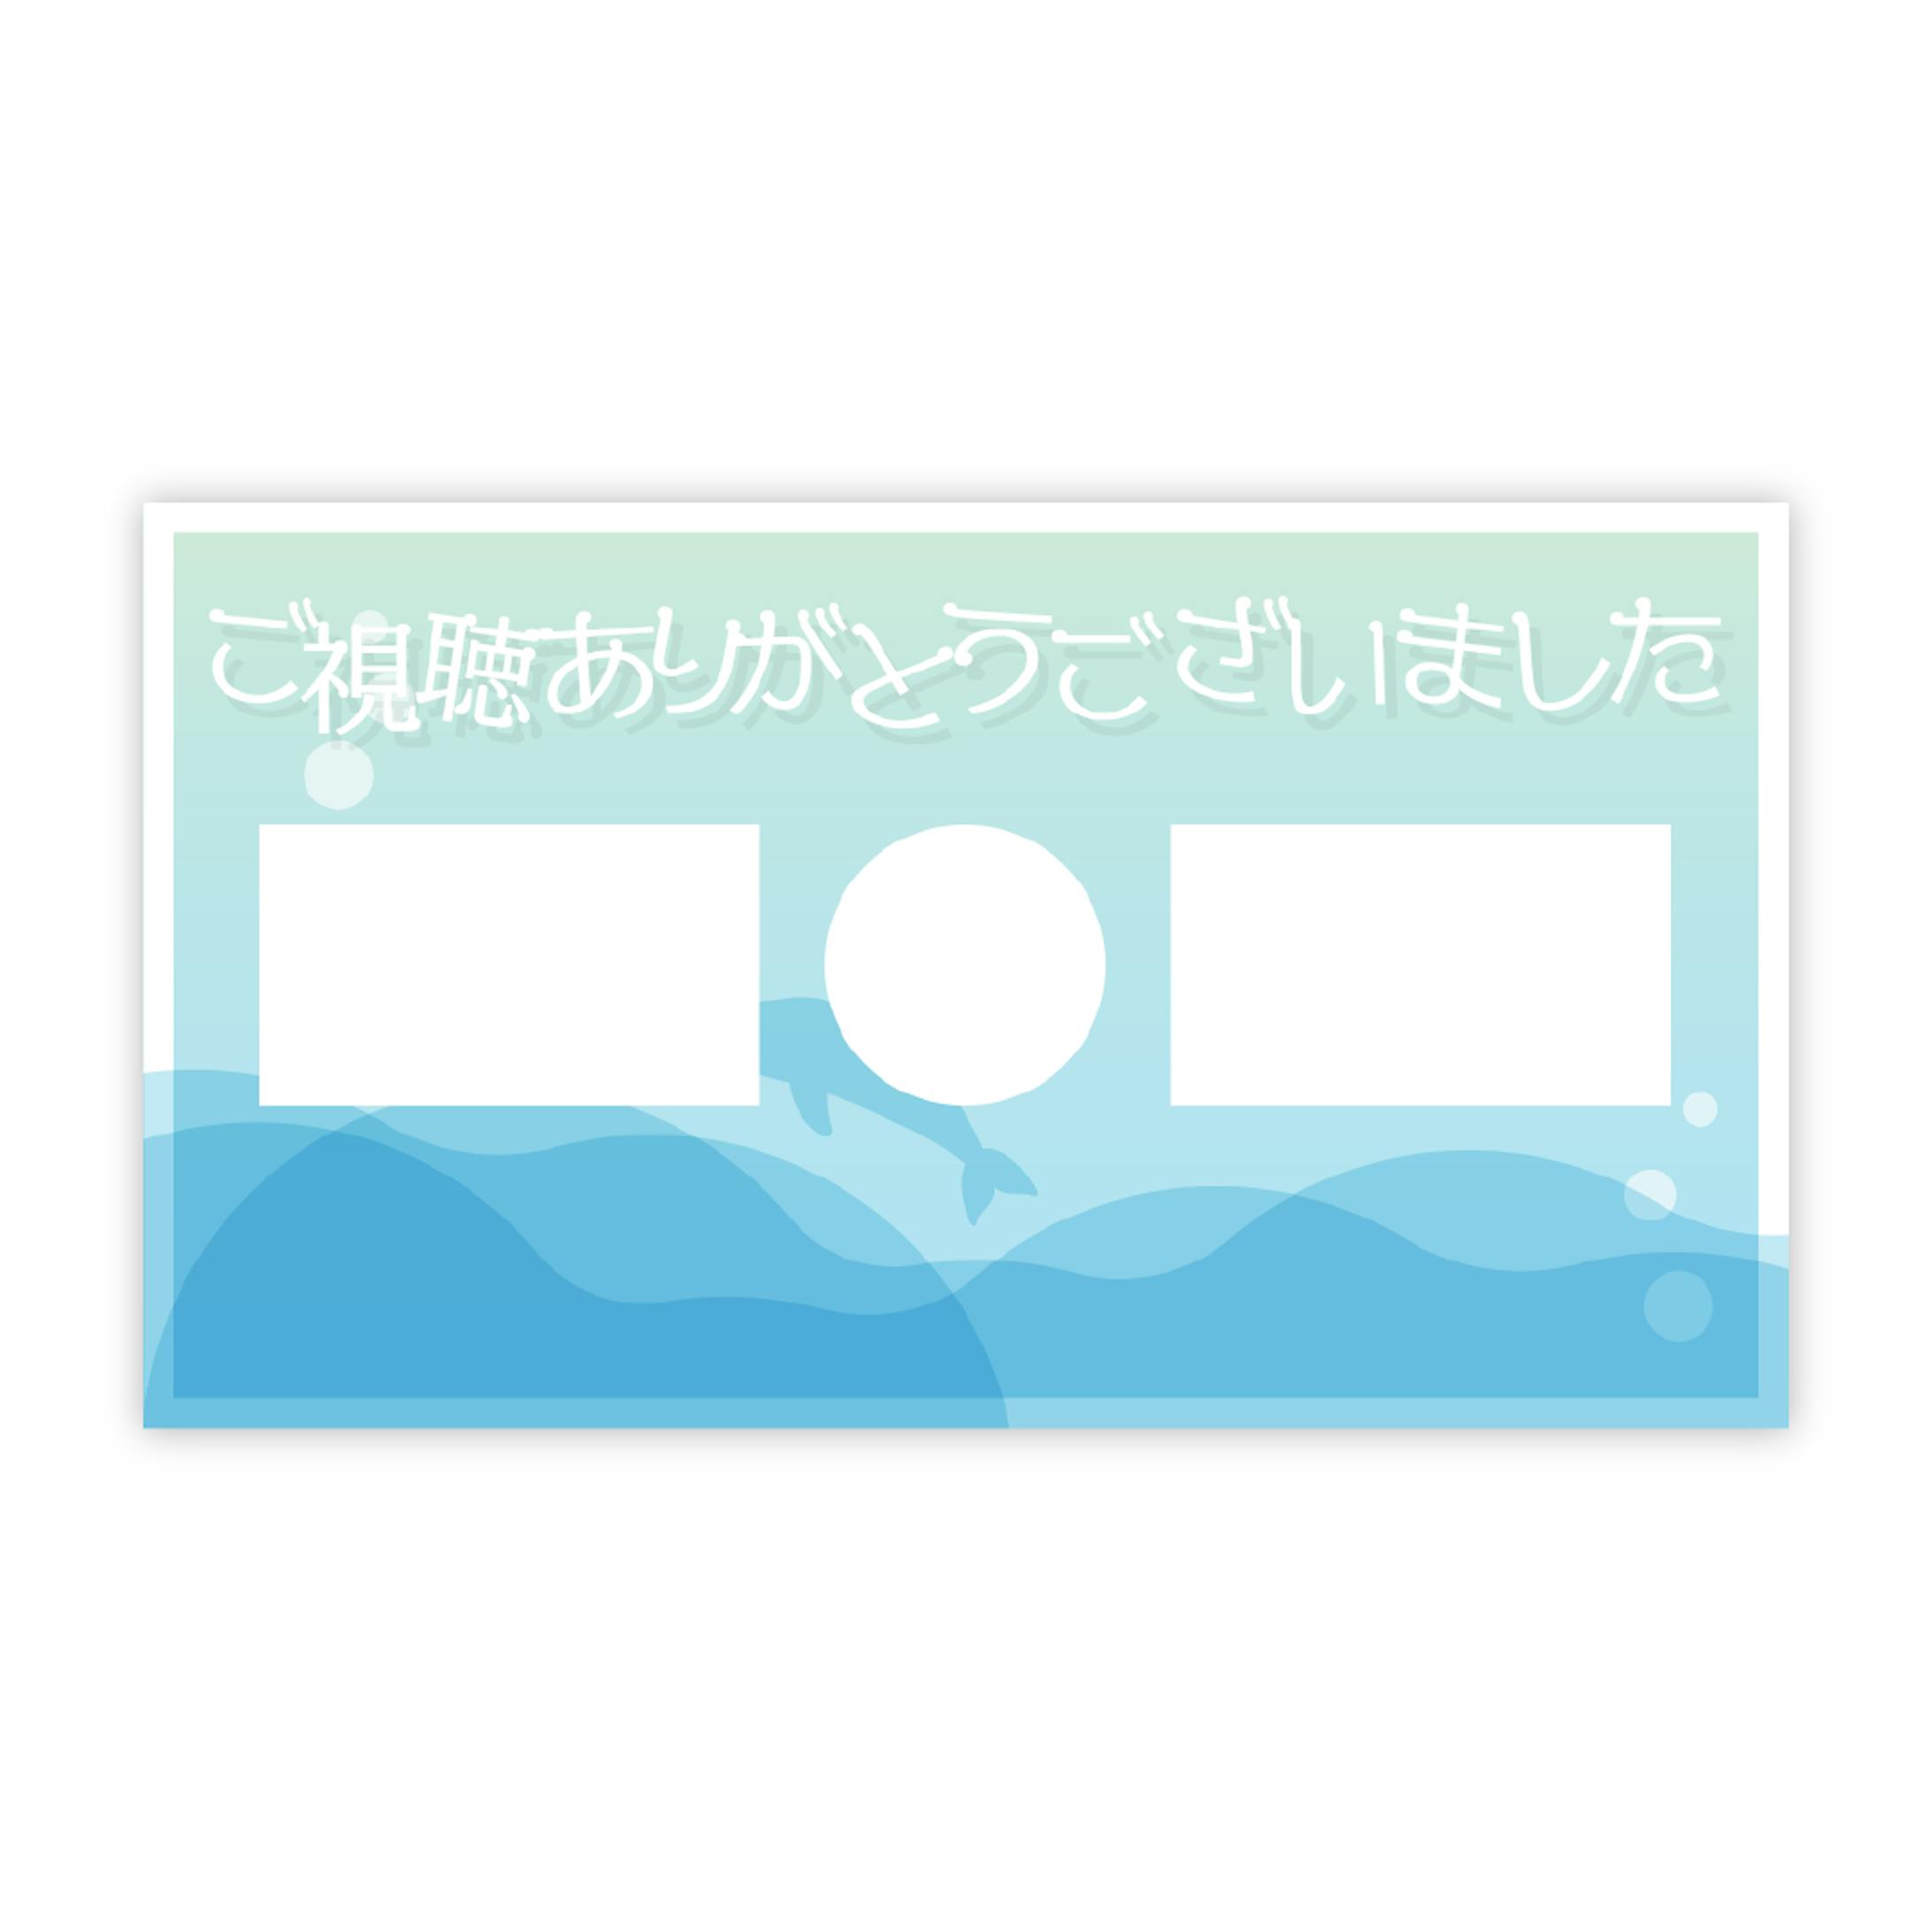 瀬戸内めりな ロゴ/配信画面-4